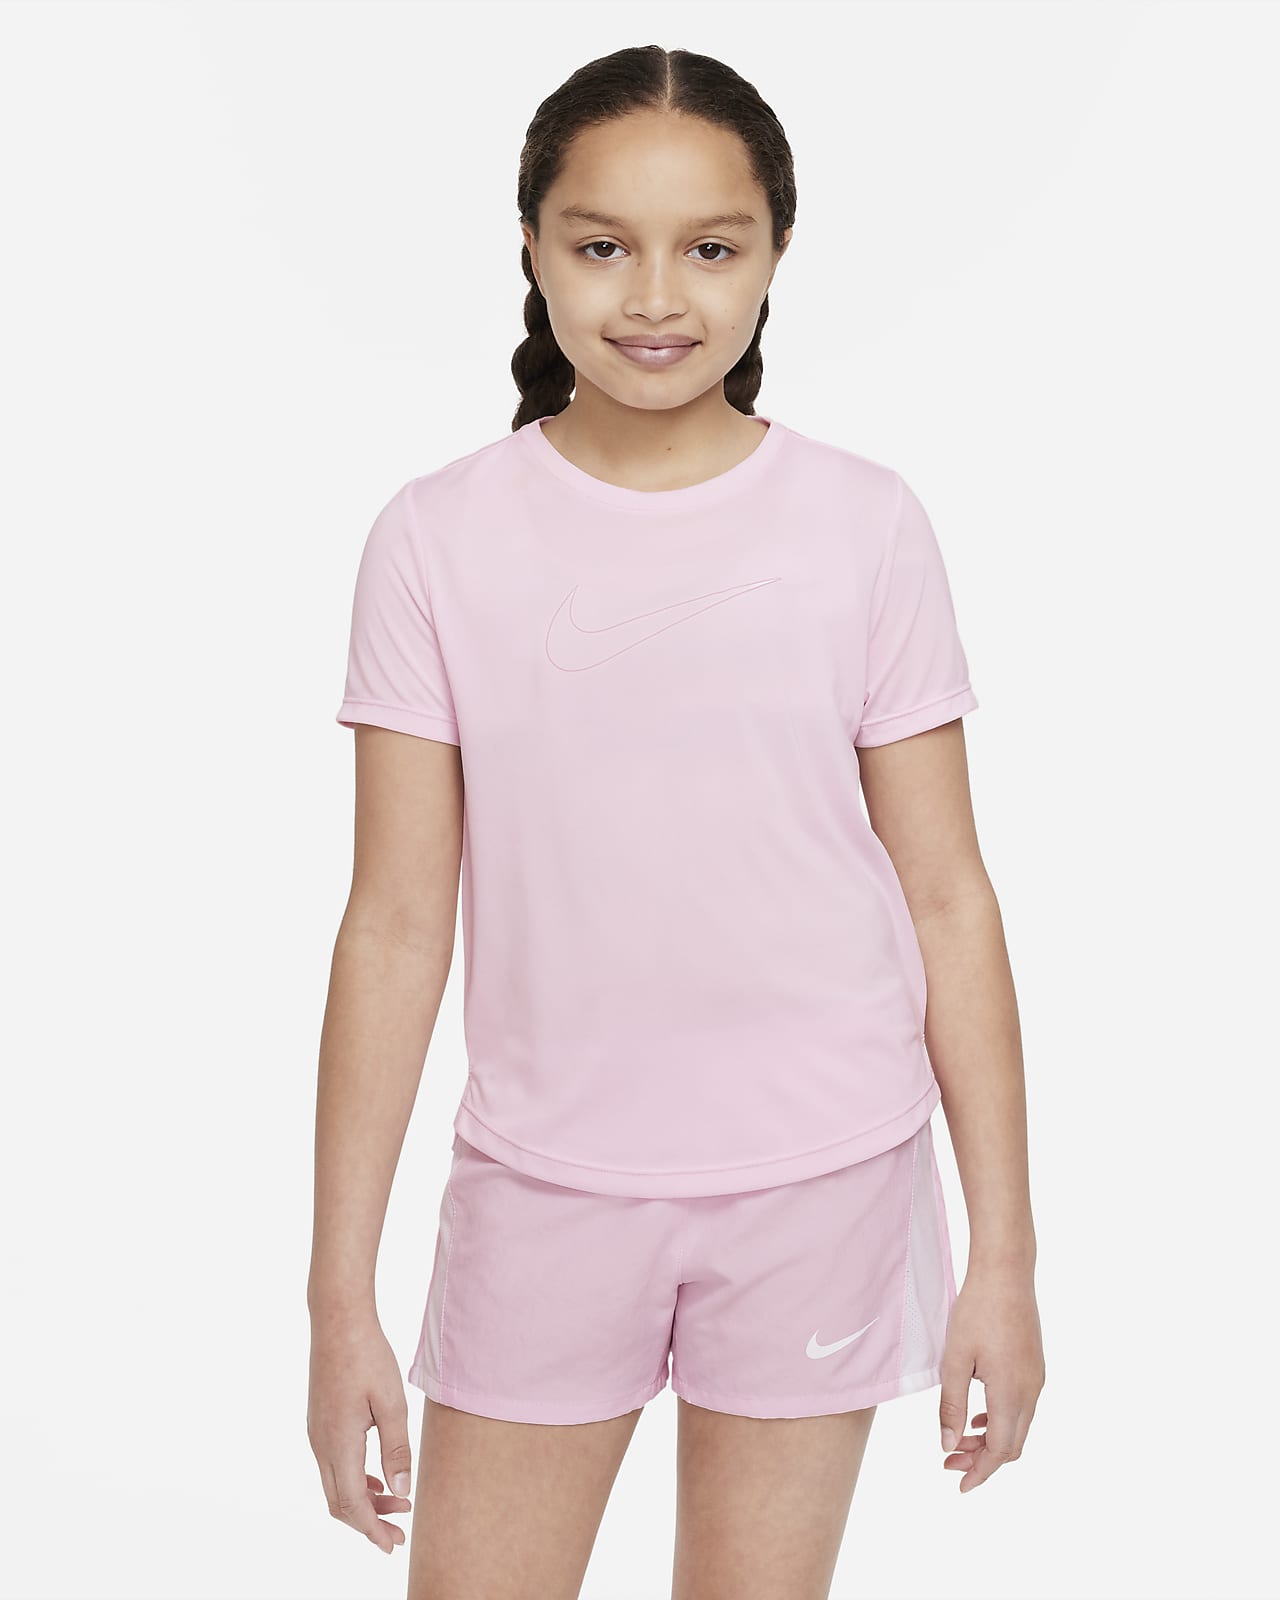 เสื้อเทรนนิ่งแขนสั้น Dri-FIT เด็กโต Nike One (หญิง)